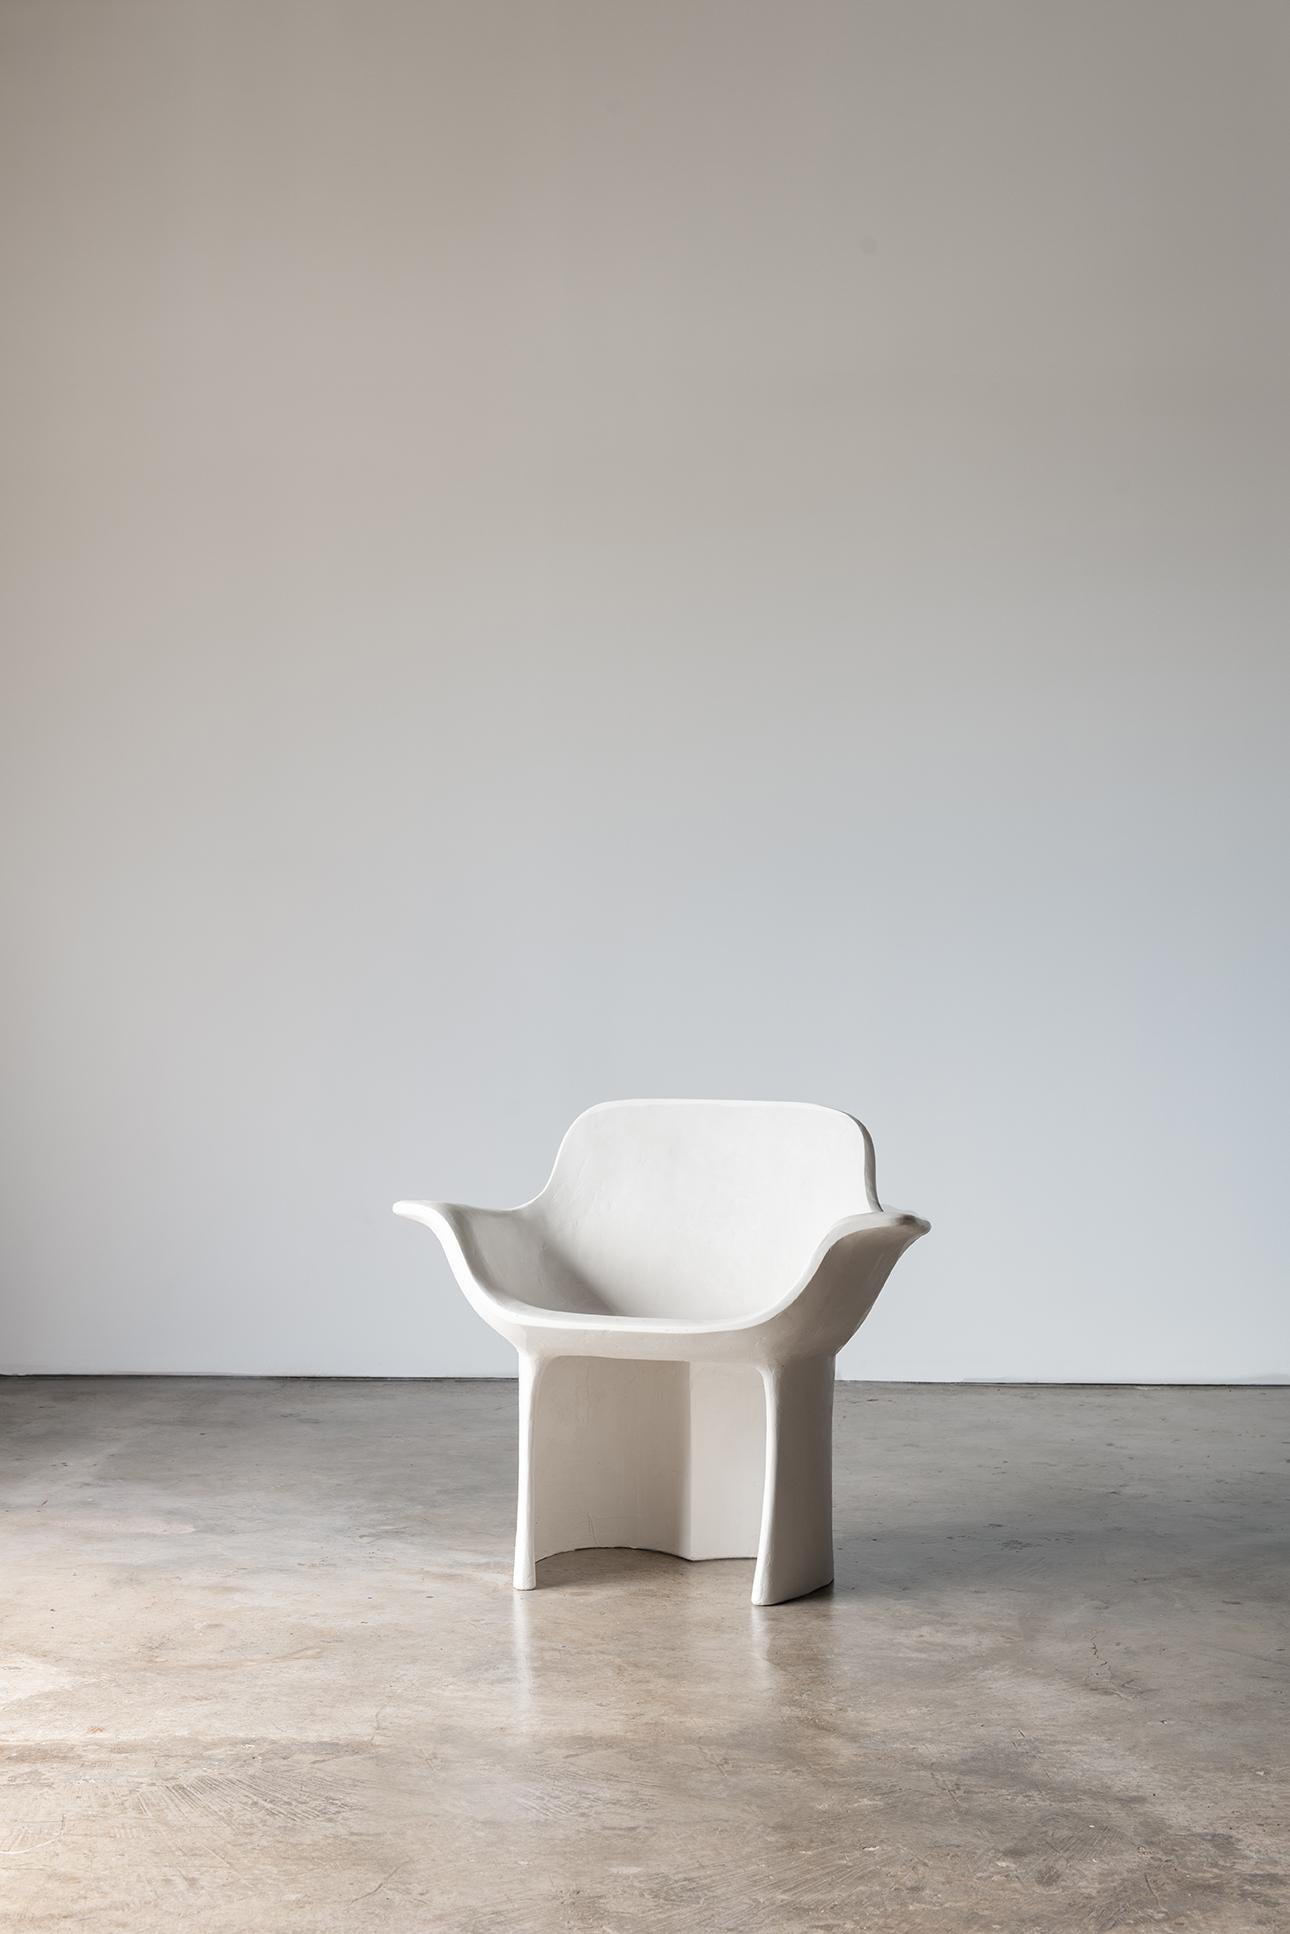 Reynold Rodriguez
Todo El Bien (Todo El Mal) Chair, 2021
Polished gypsum plaster
Measures: 26 x 36 x 32 in
Ed. 1/8.